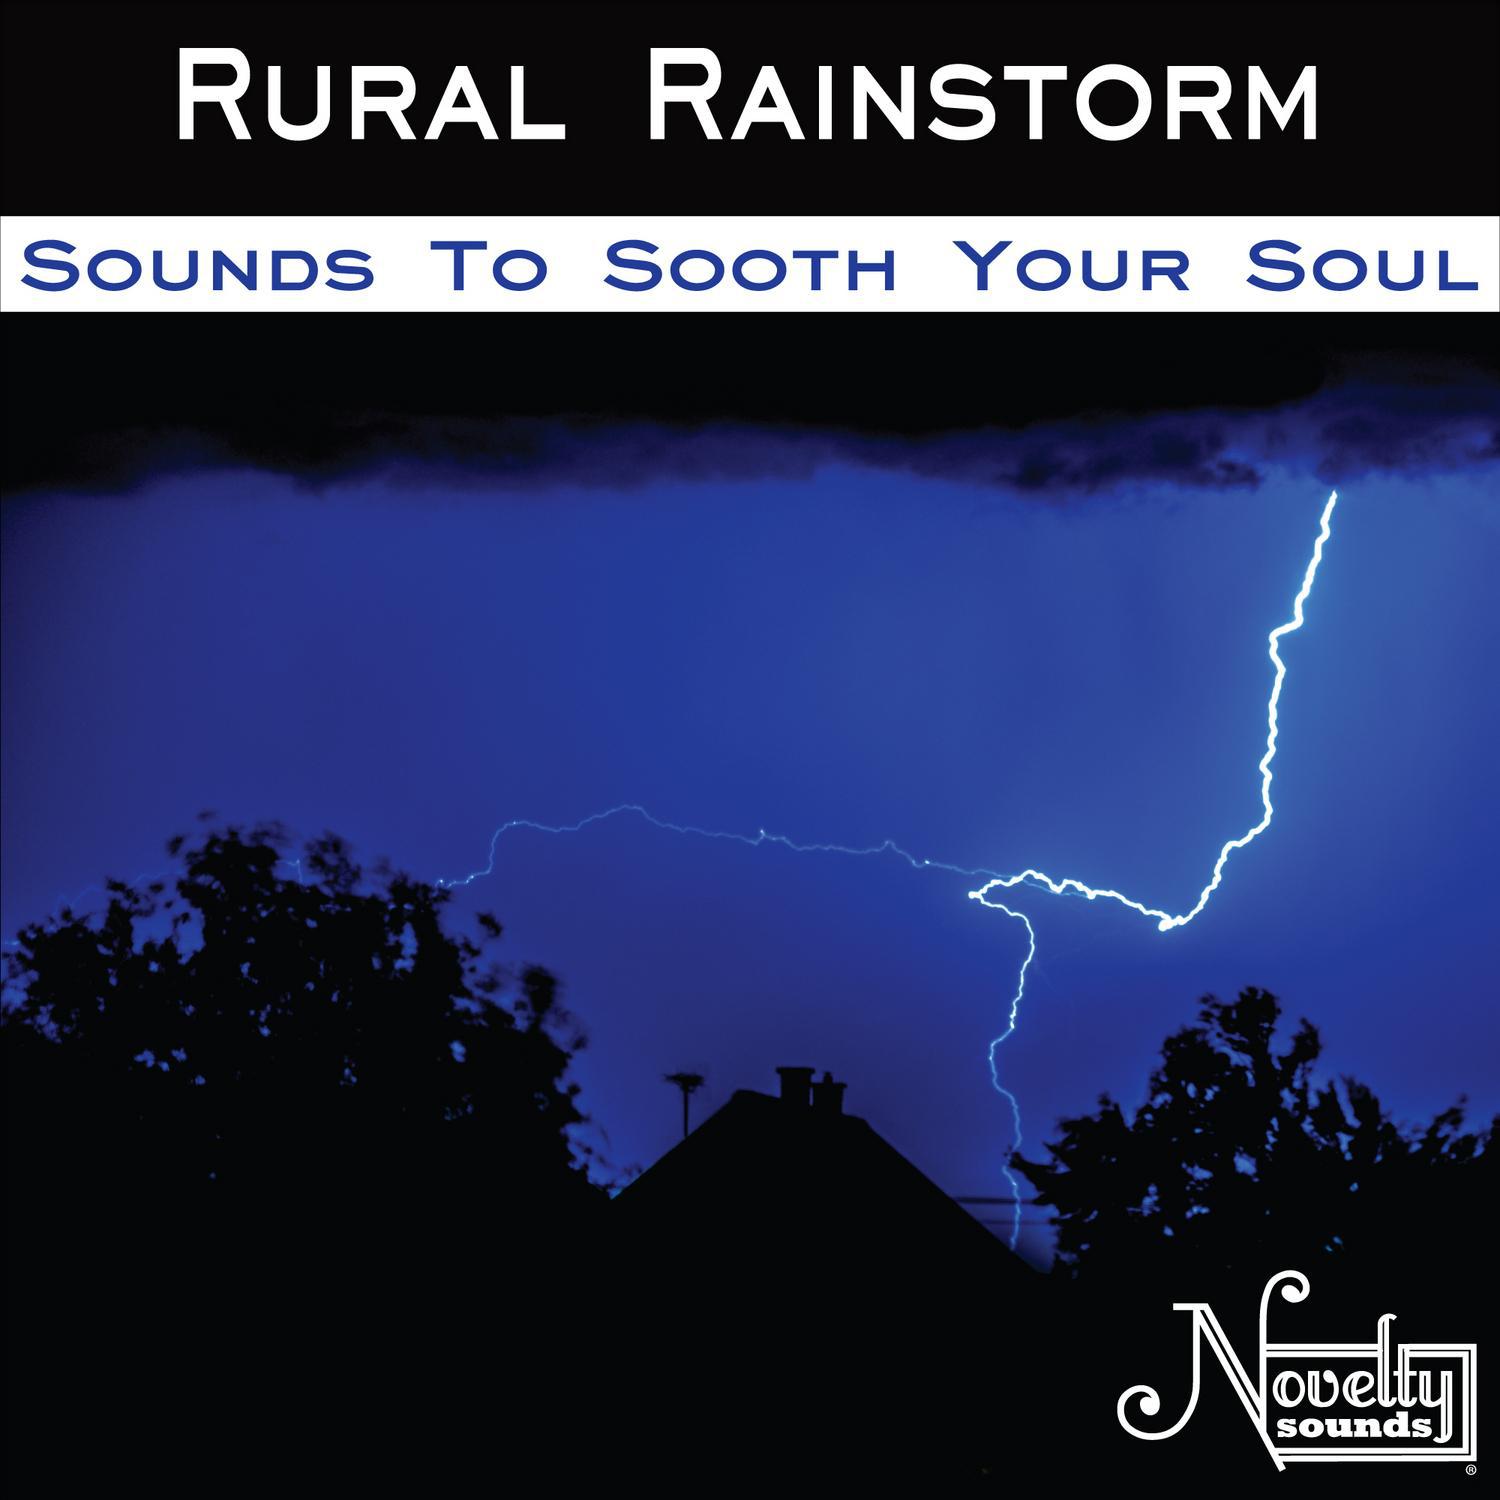 Rural Rainstorm